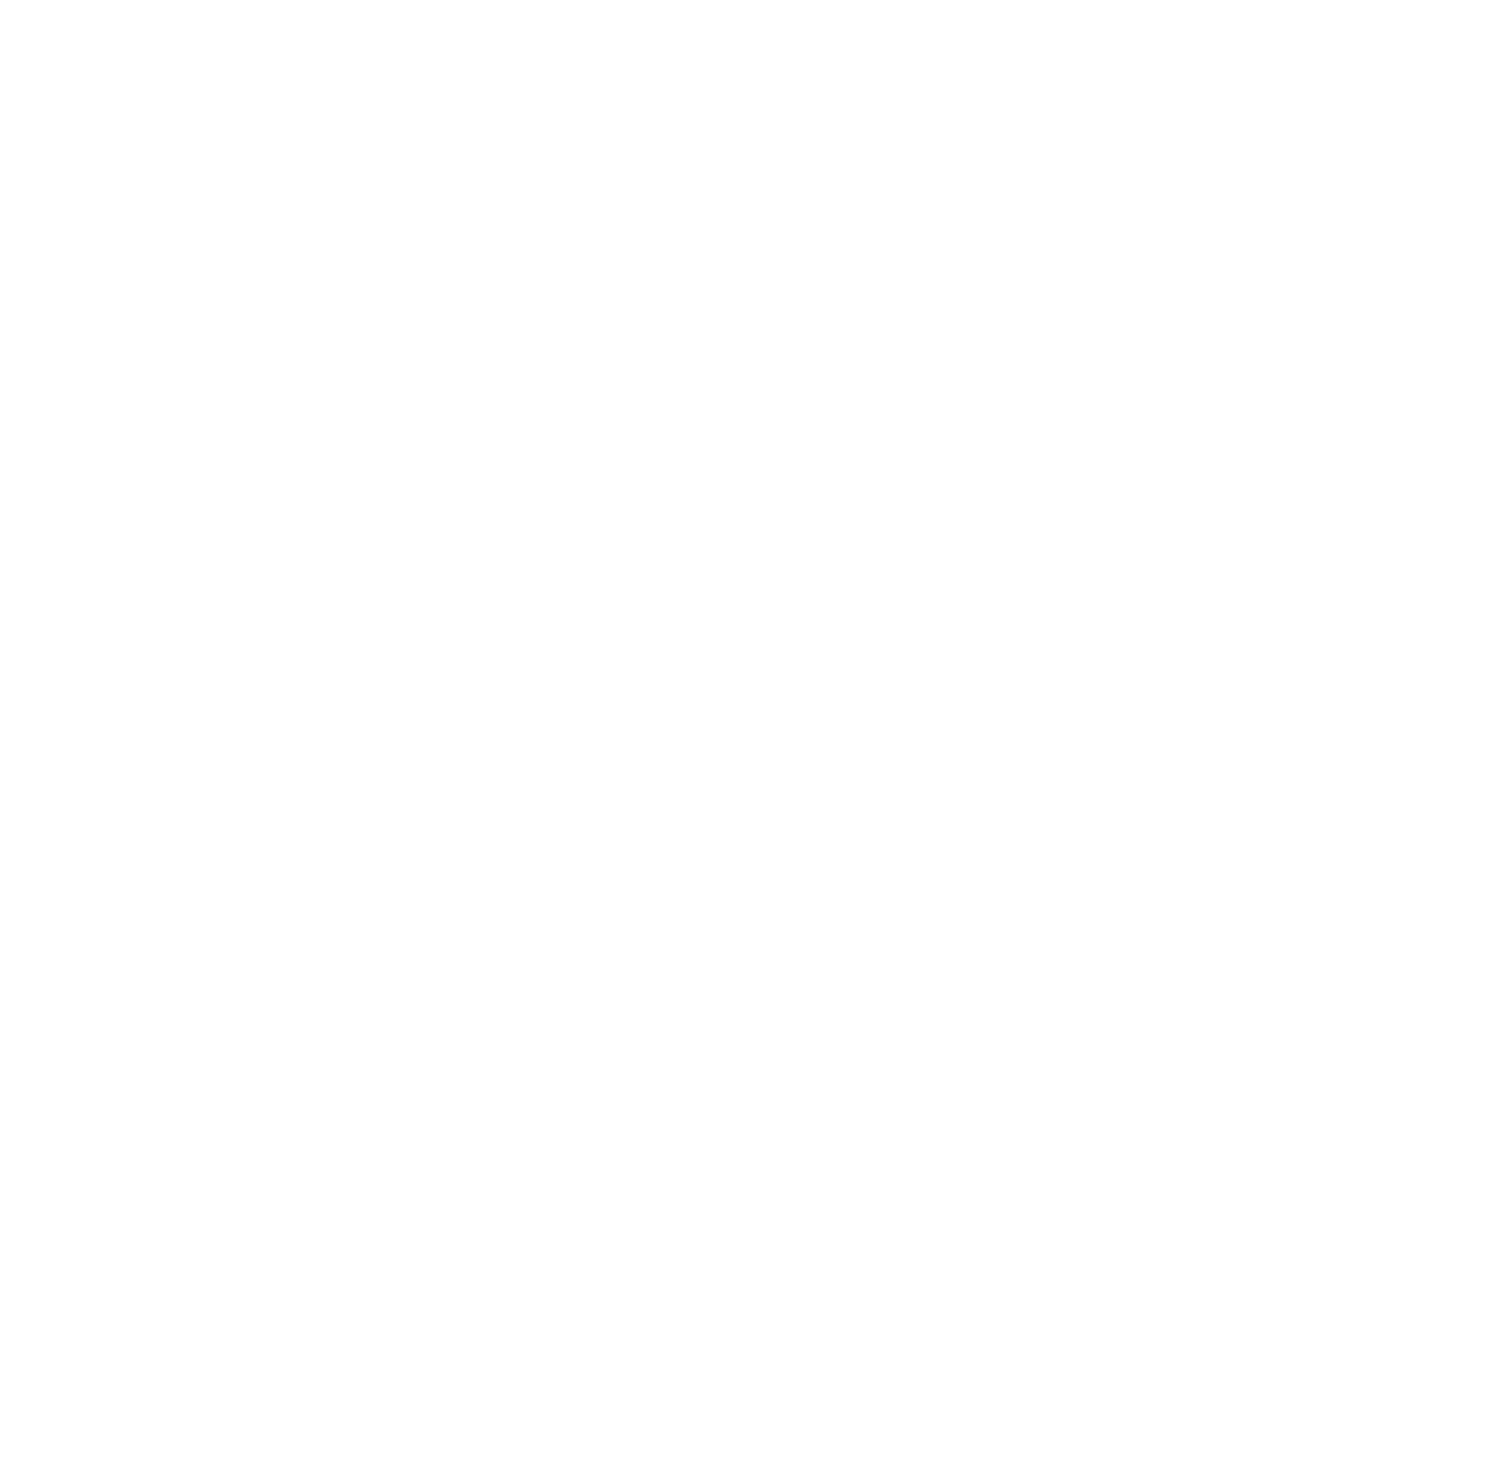 The Hops Company